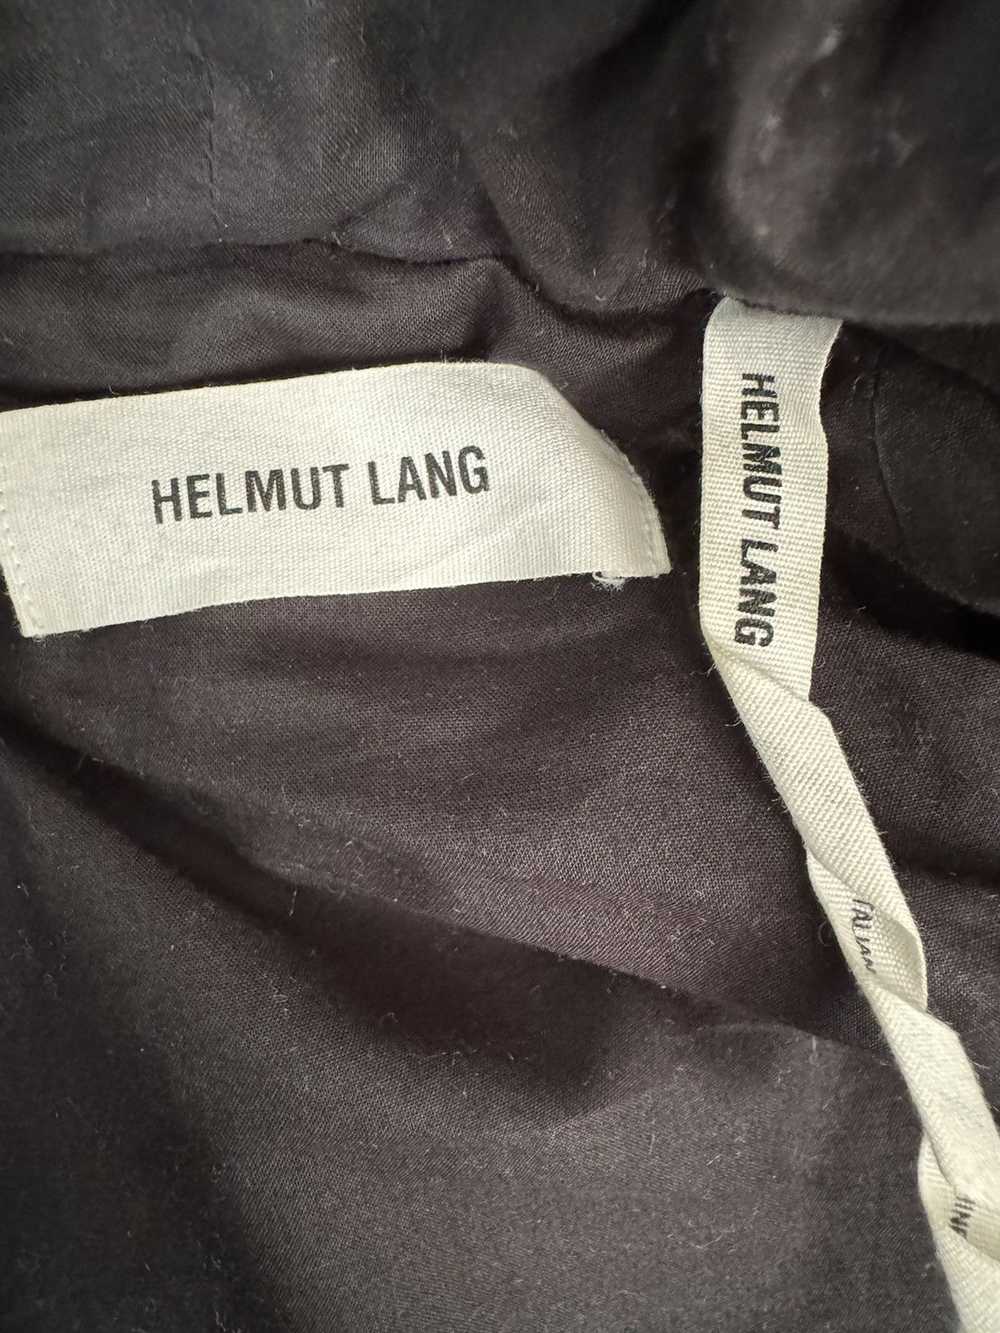 Helmut Lang Helmut Lang Bomber Jacket With Hood - image 3